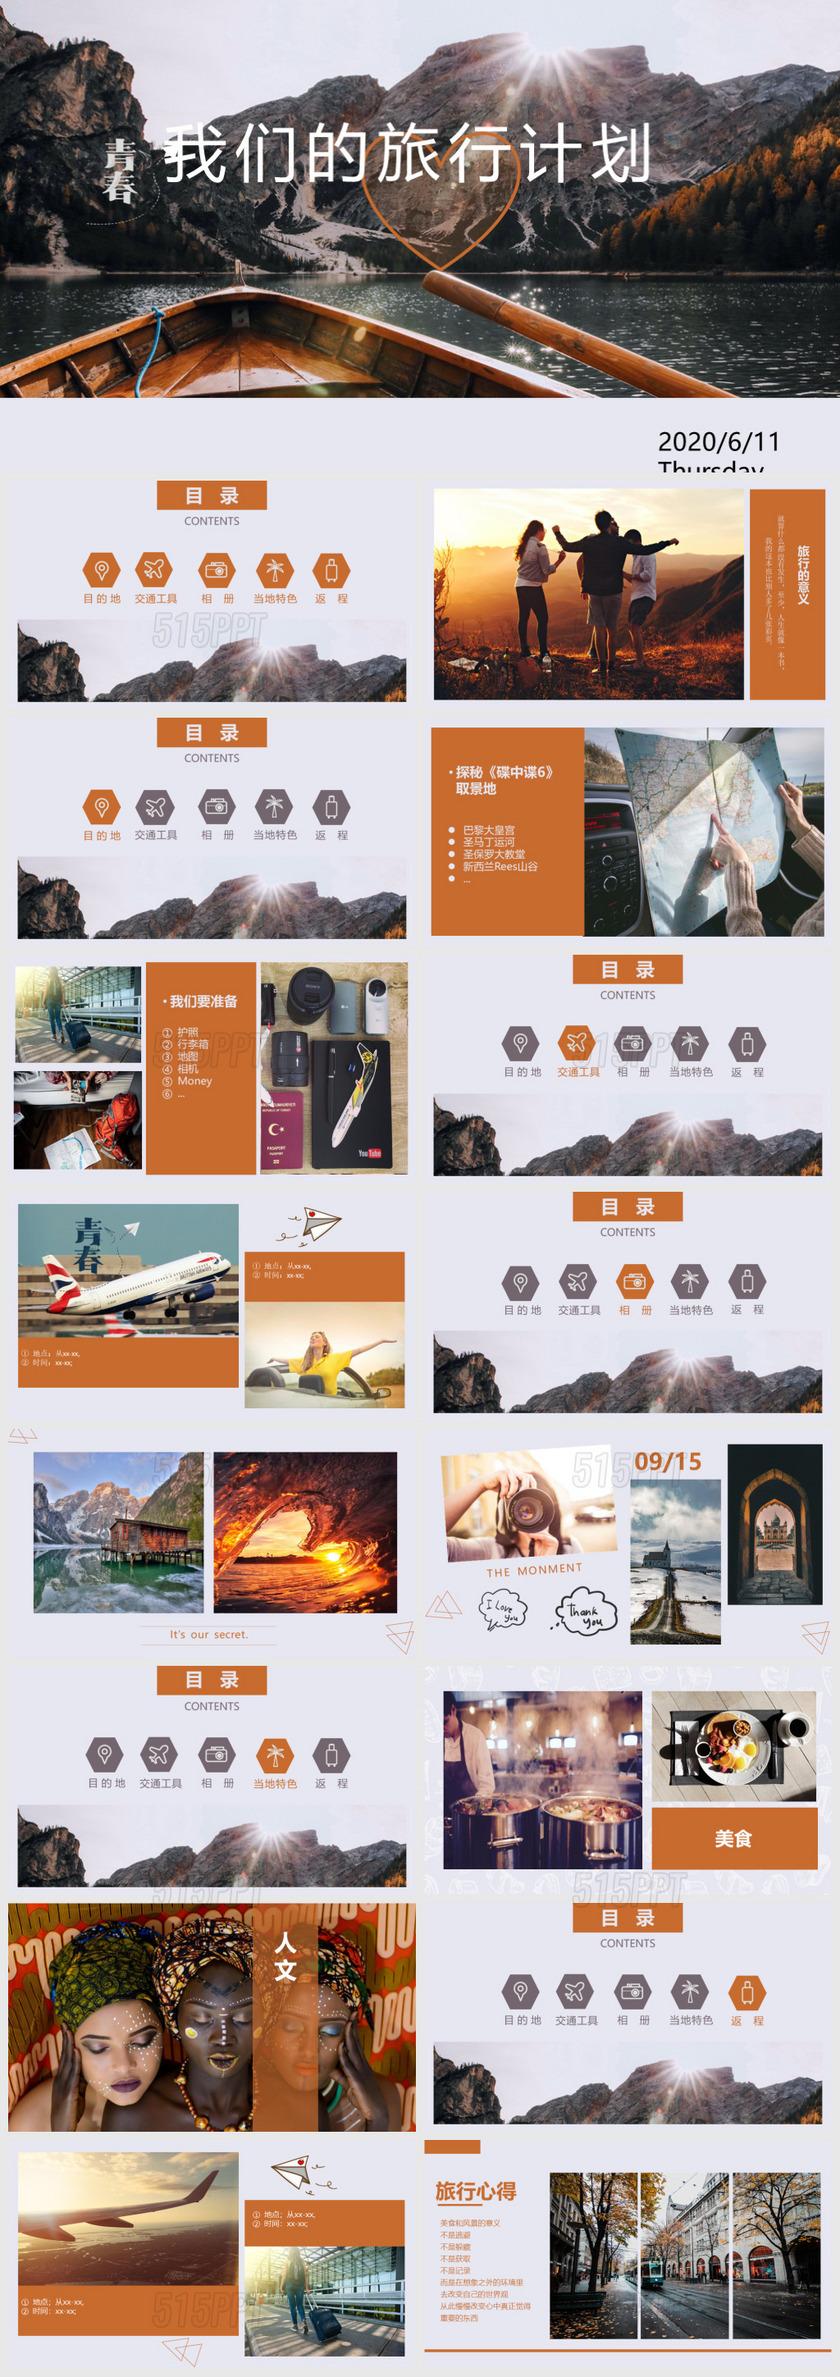 小清新简约风格旅行计划总结日记相册